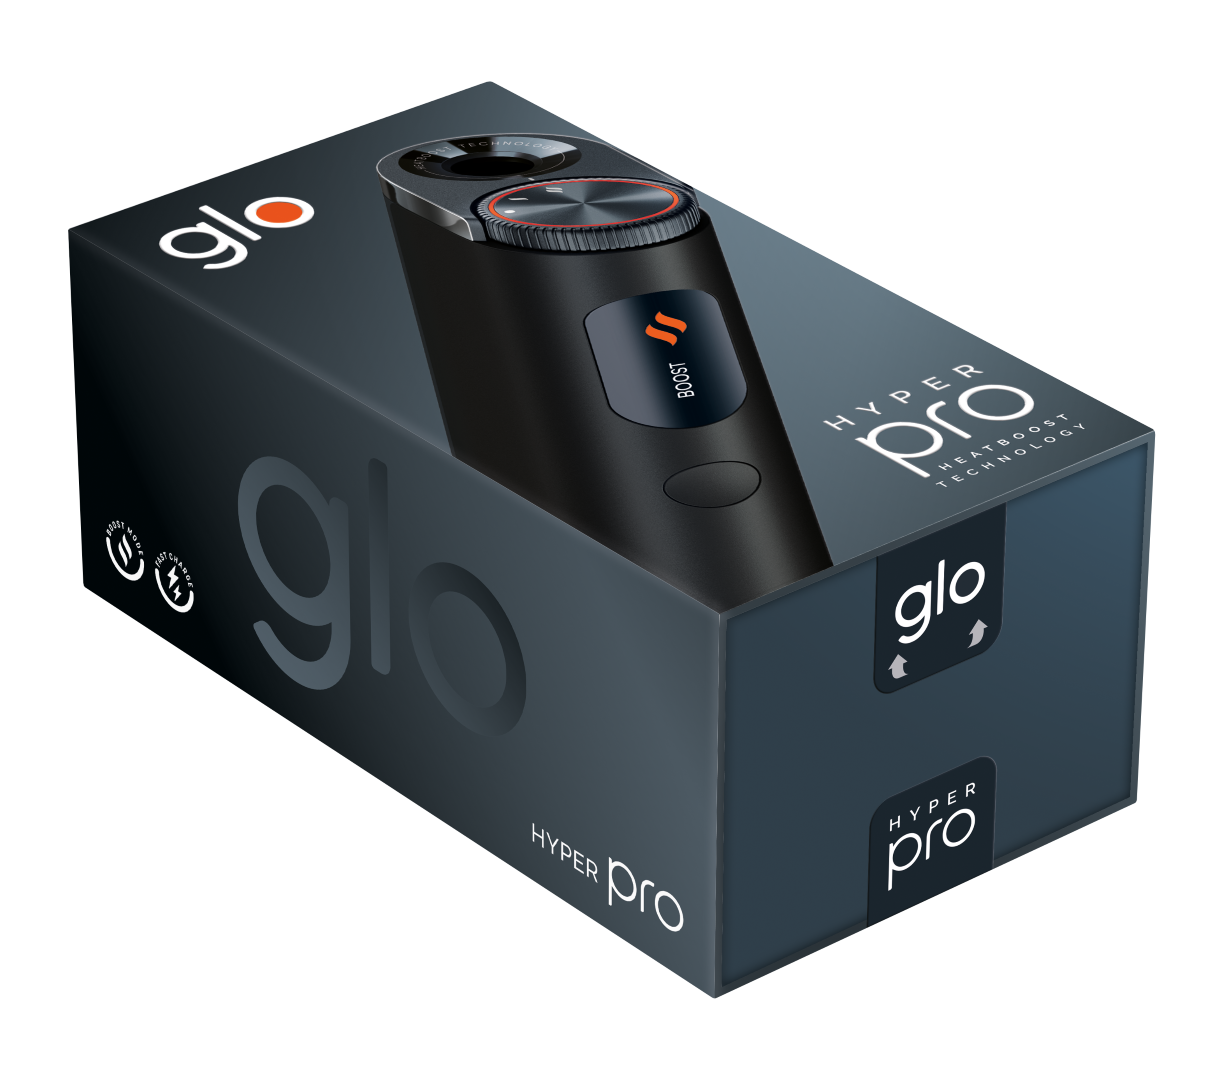 glo Hyper Pro Black mit Wunschgravur